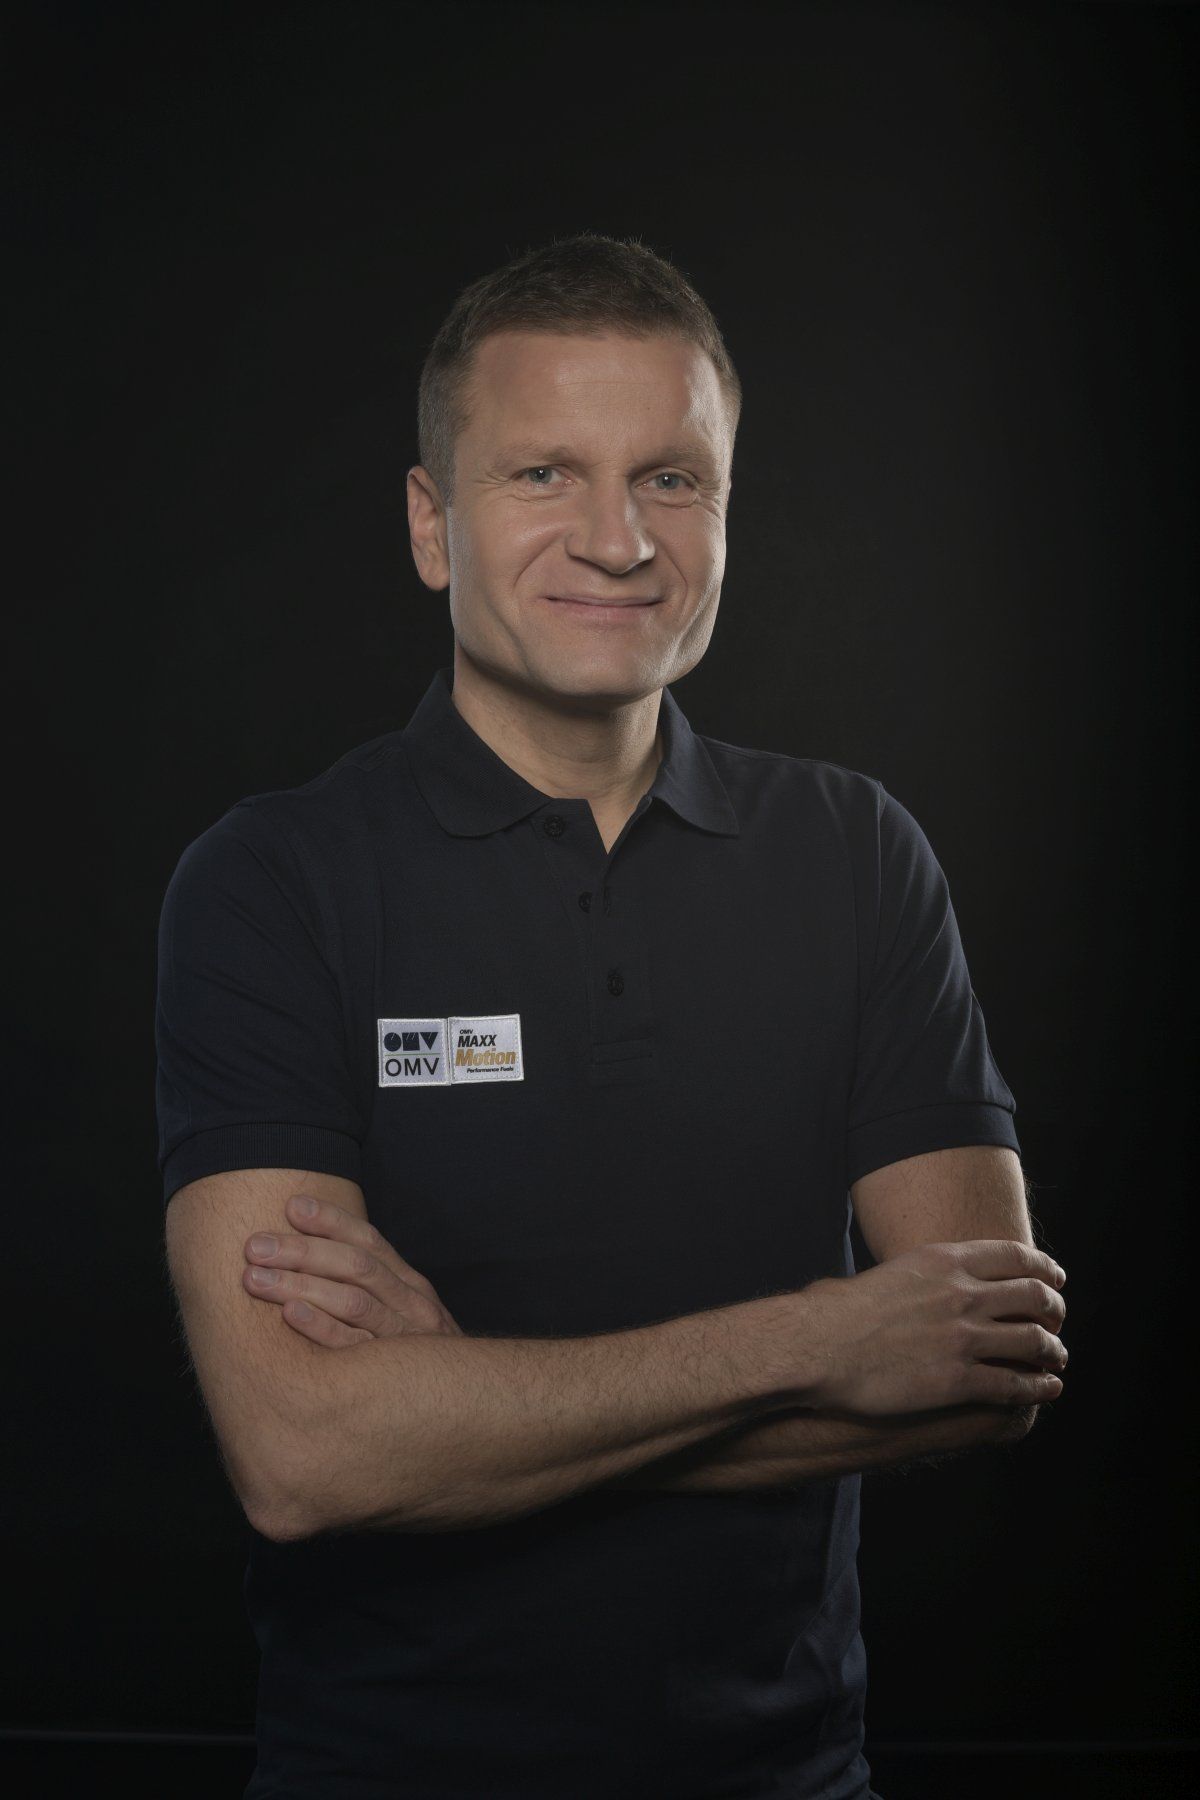 Pavel Turek